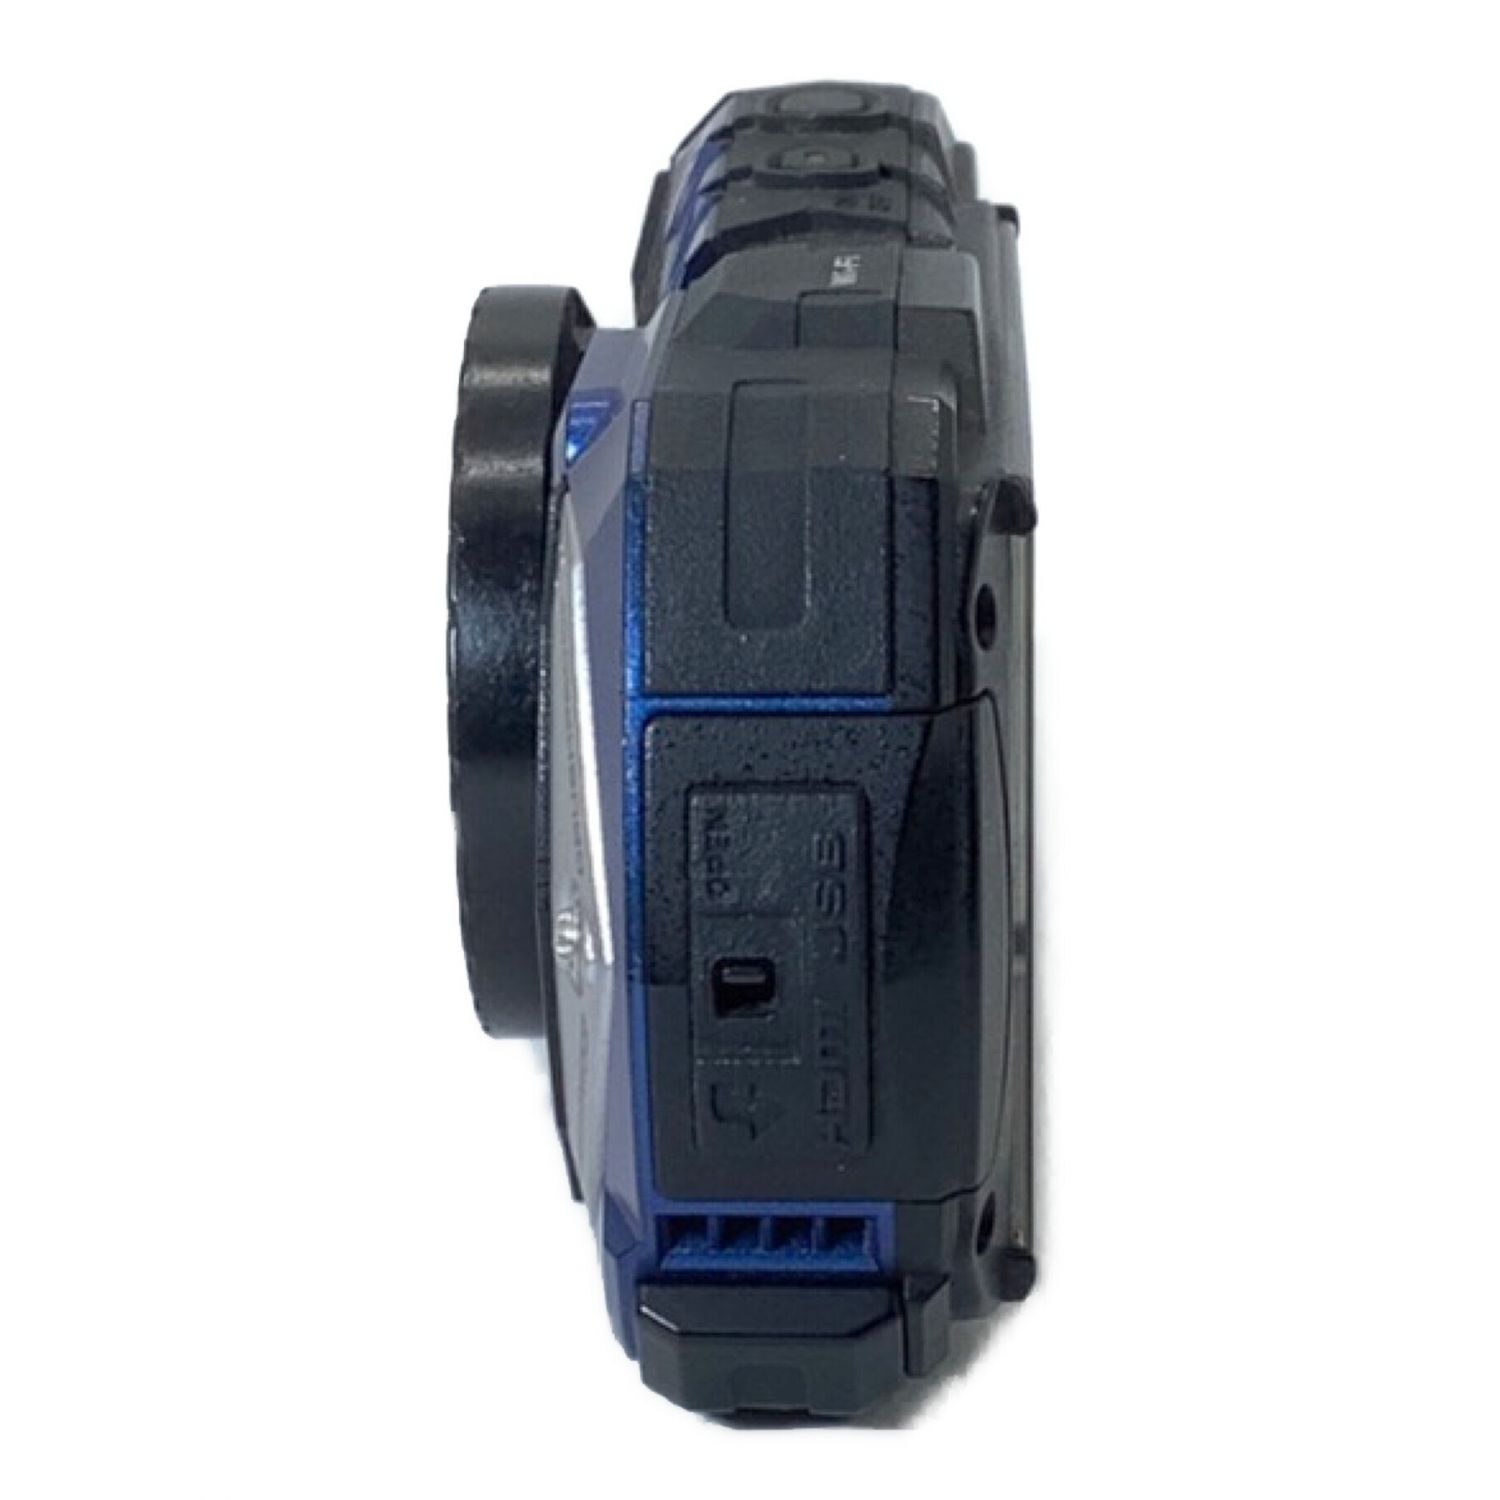 RICOH (リコー) 防水デジタルカメラ WG-40W USB2.0（マイクロB ...